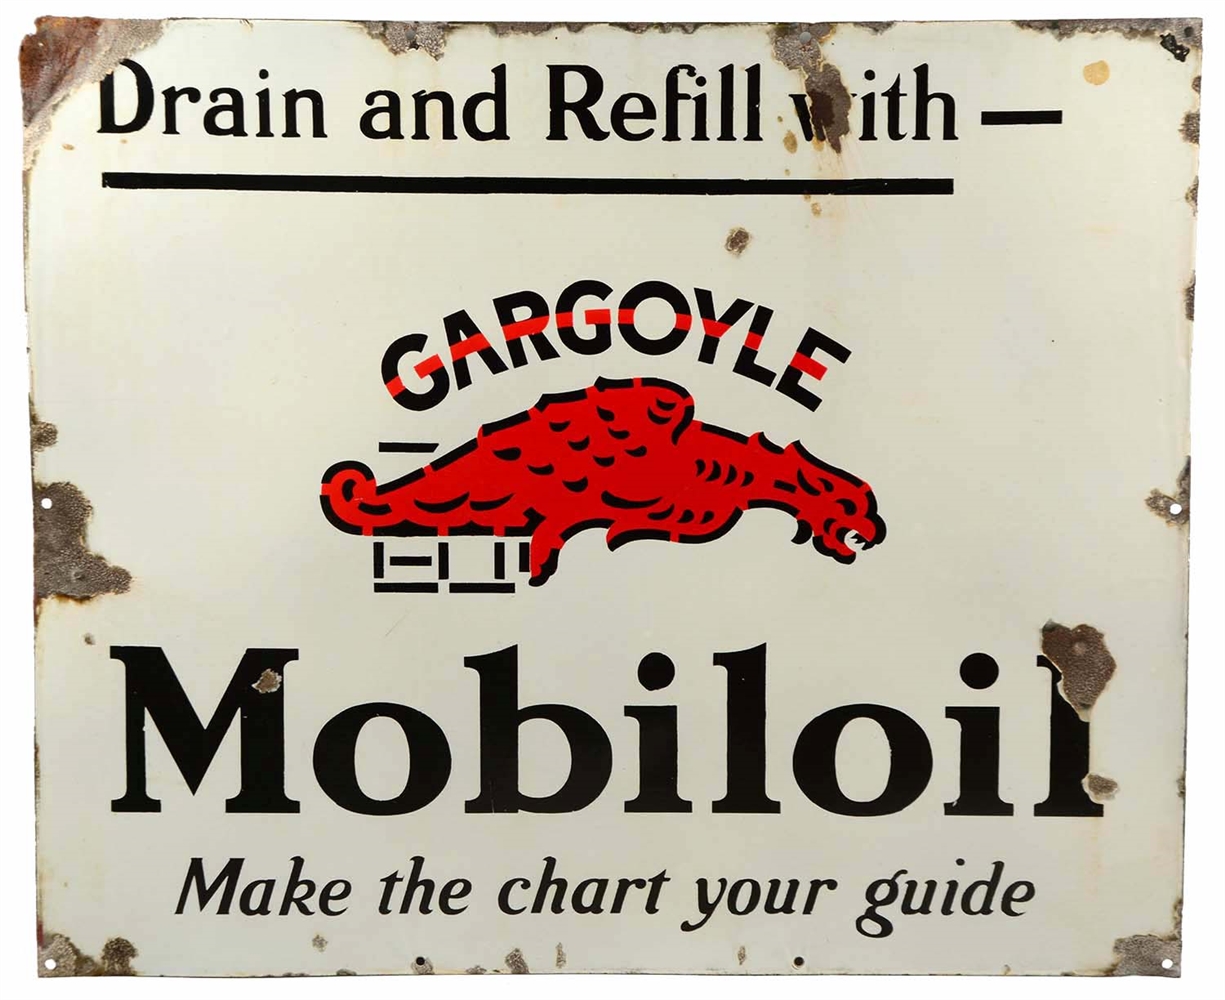 MOBILOIL W/ GARGOYLE "DRAIN & REFILL" PORCELAIN SIGN.